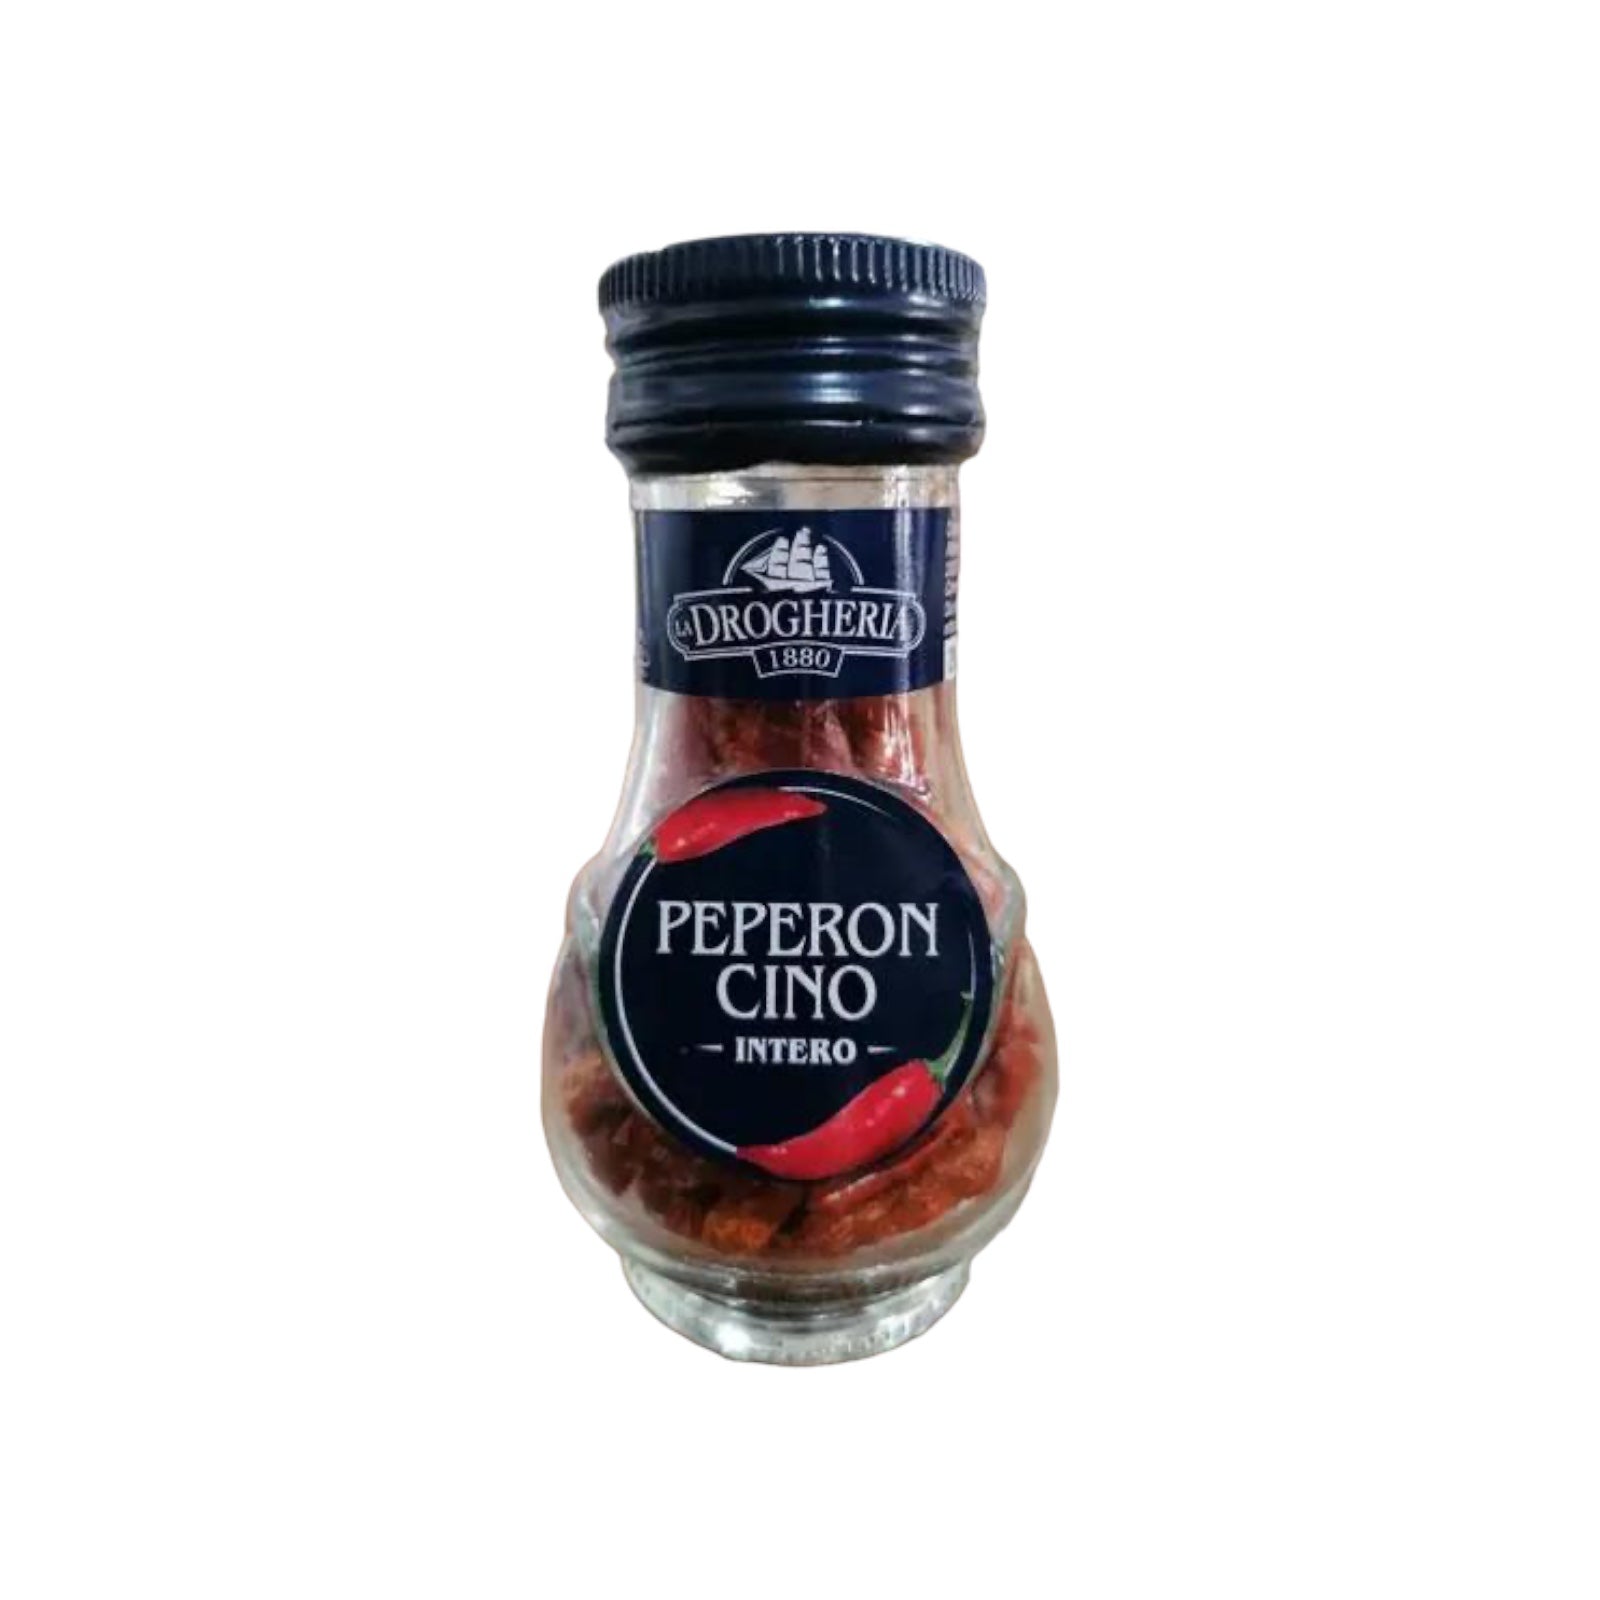 La Drogheria 1880 - Peperoncino intero - Whole Hot Chili Pepper